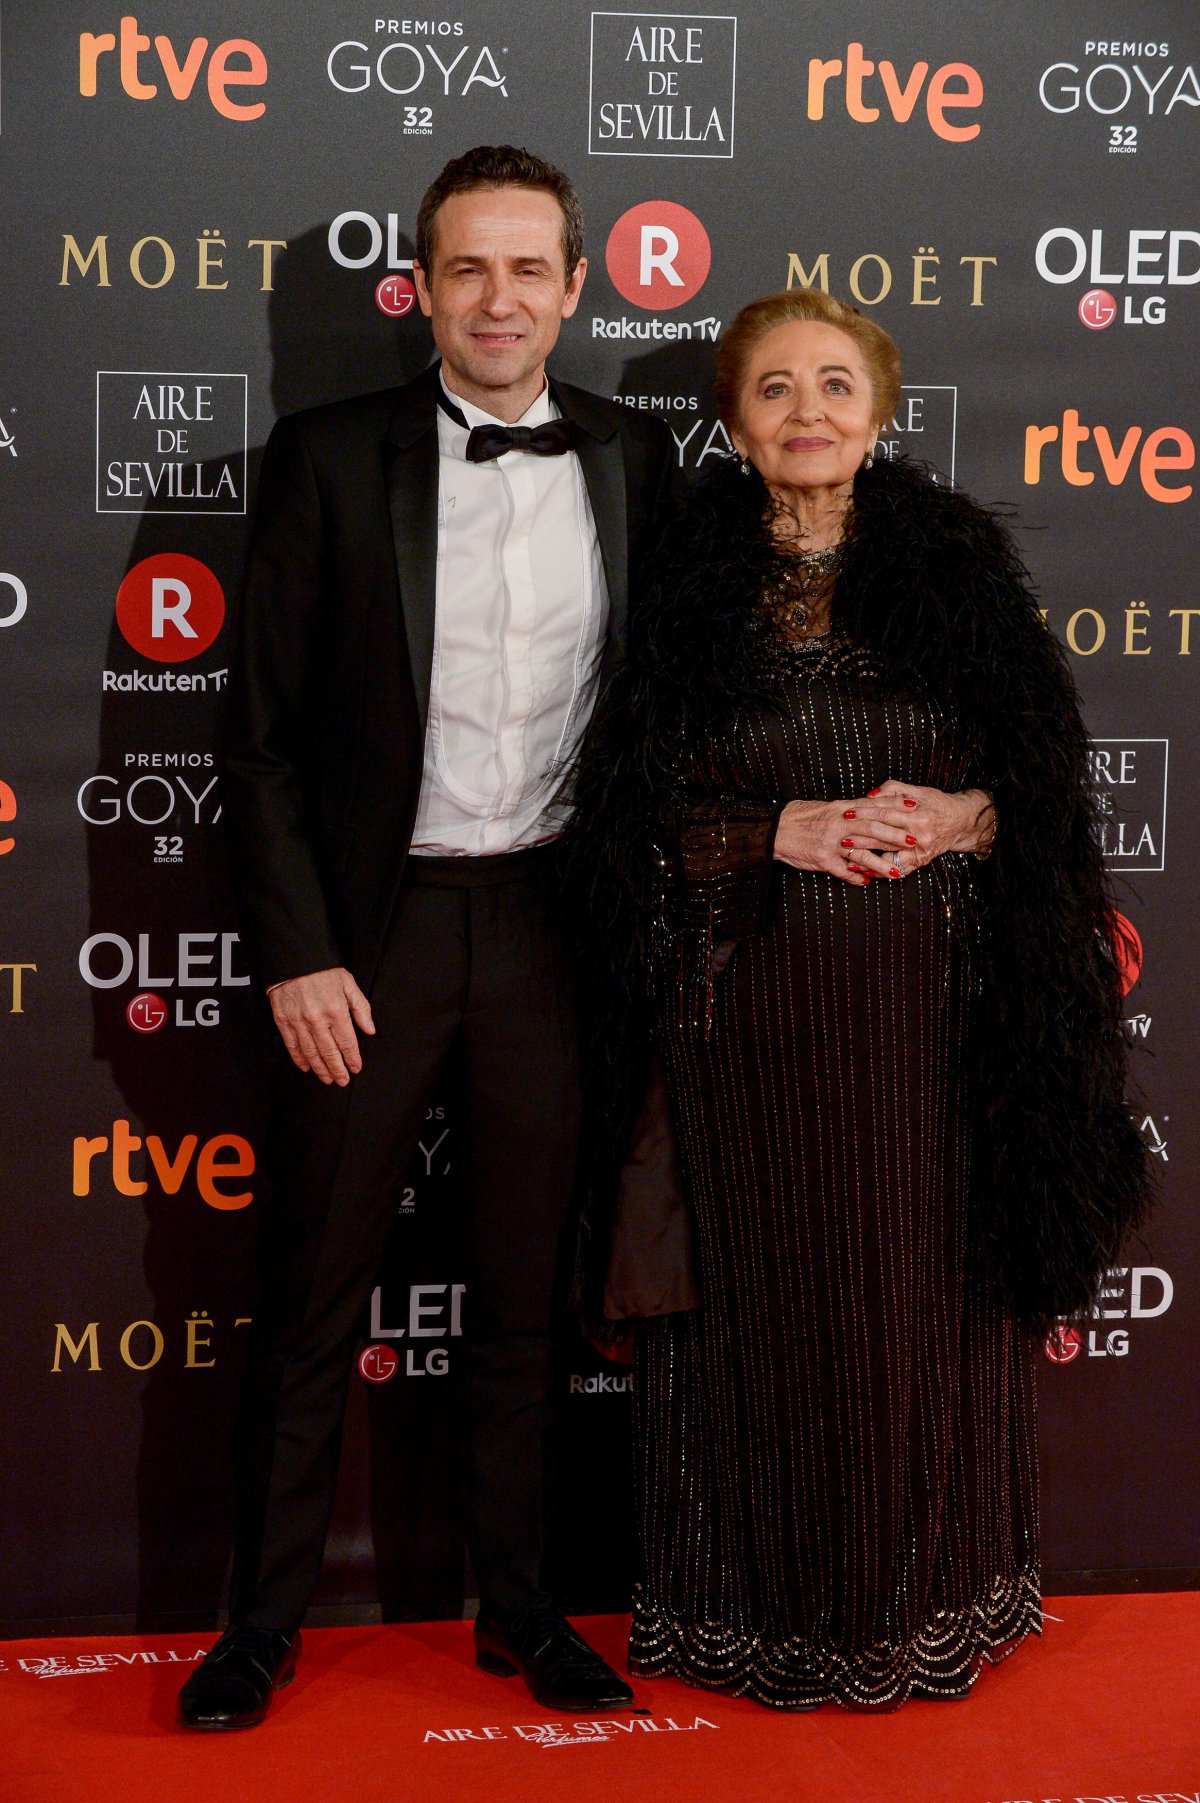 La alfombra roja de los Premios Goya más reivindicativos